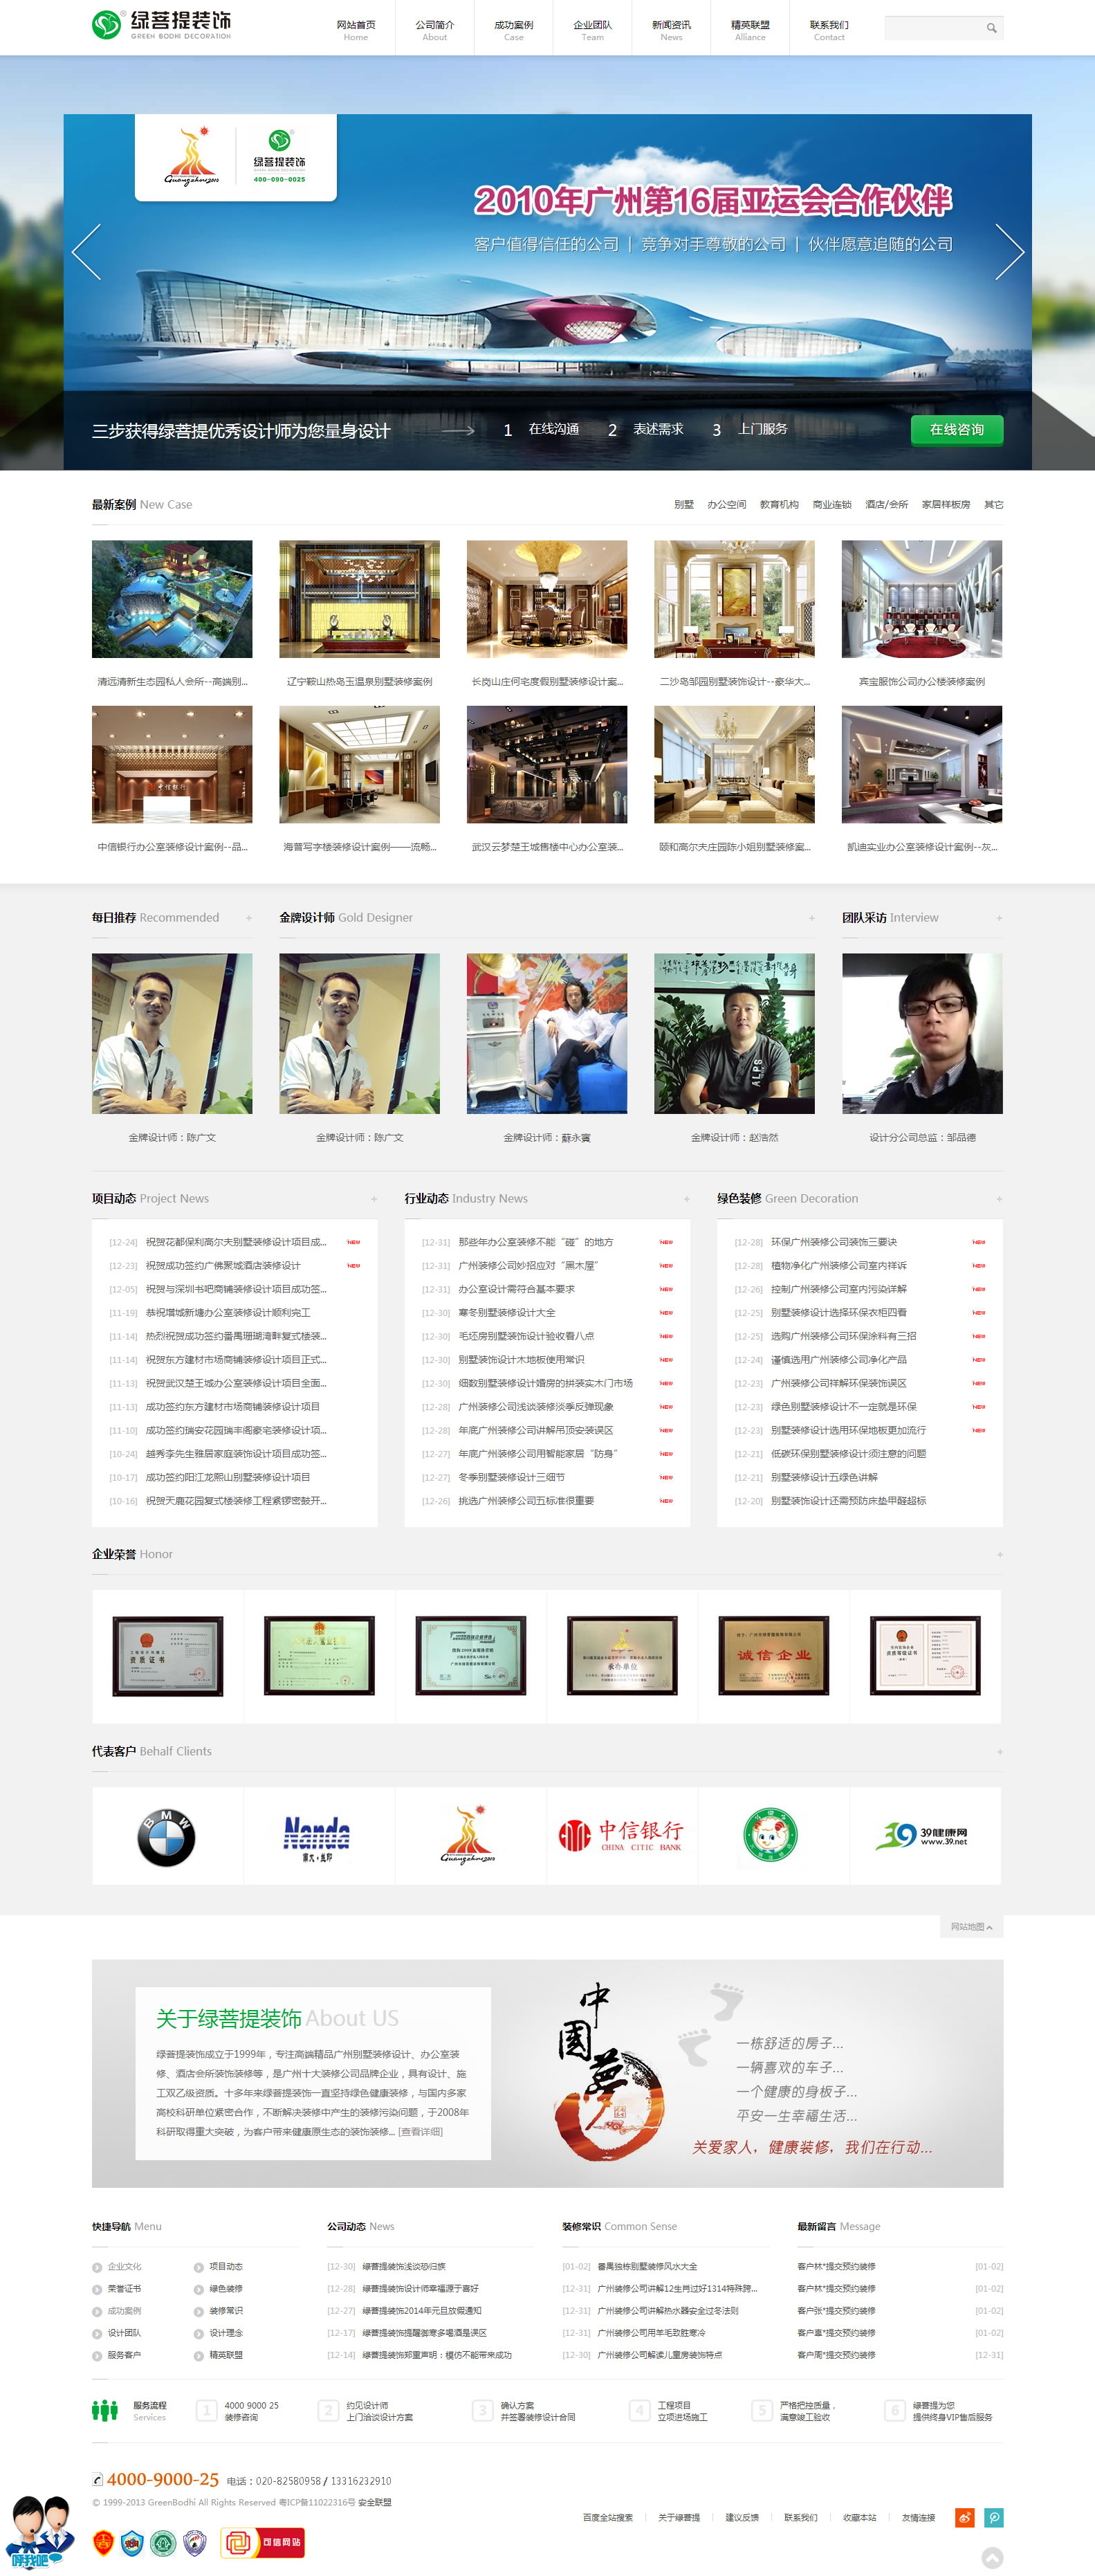 绿色win8风格的绿菩提家居装饰企业网站模板html全站下载